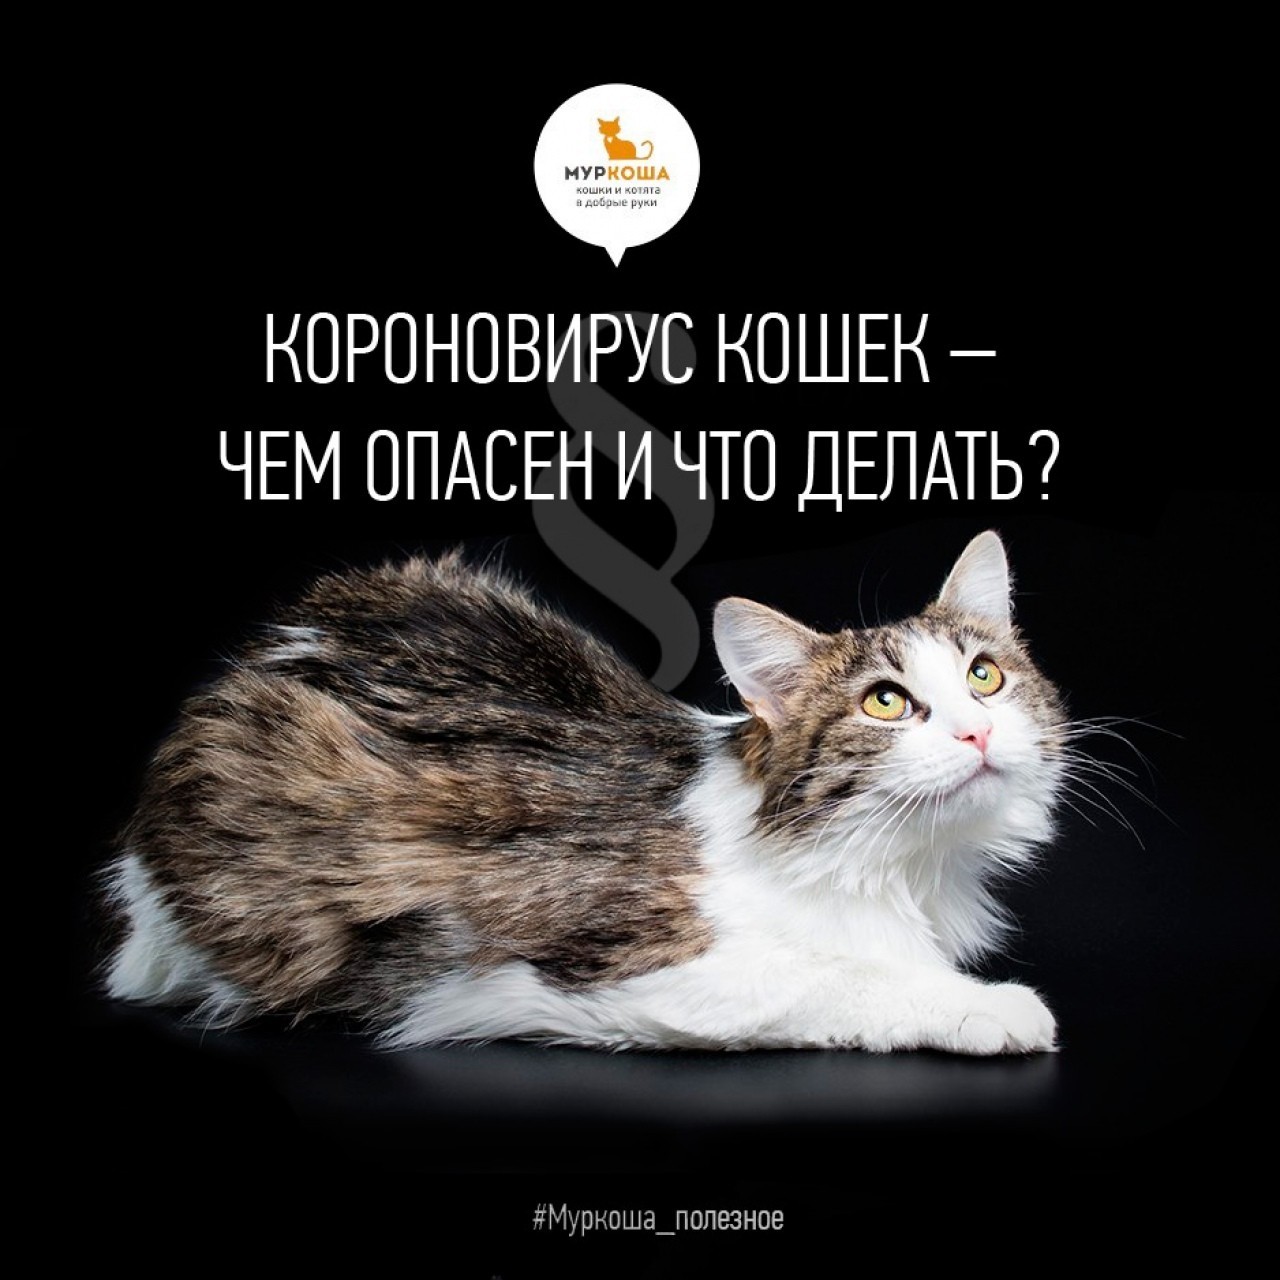 Coronovirus in cats - what is dangerous and what to do? - My, Murkosh shelter, Murkosha, Useful, cat, Longpost, Coronavirus, Pets